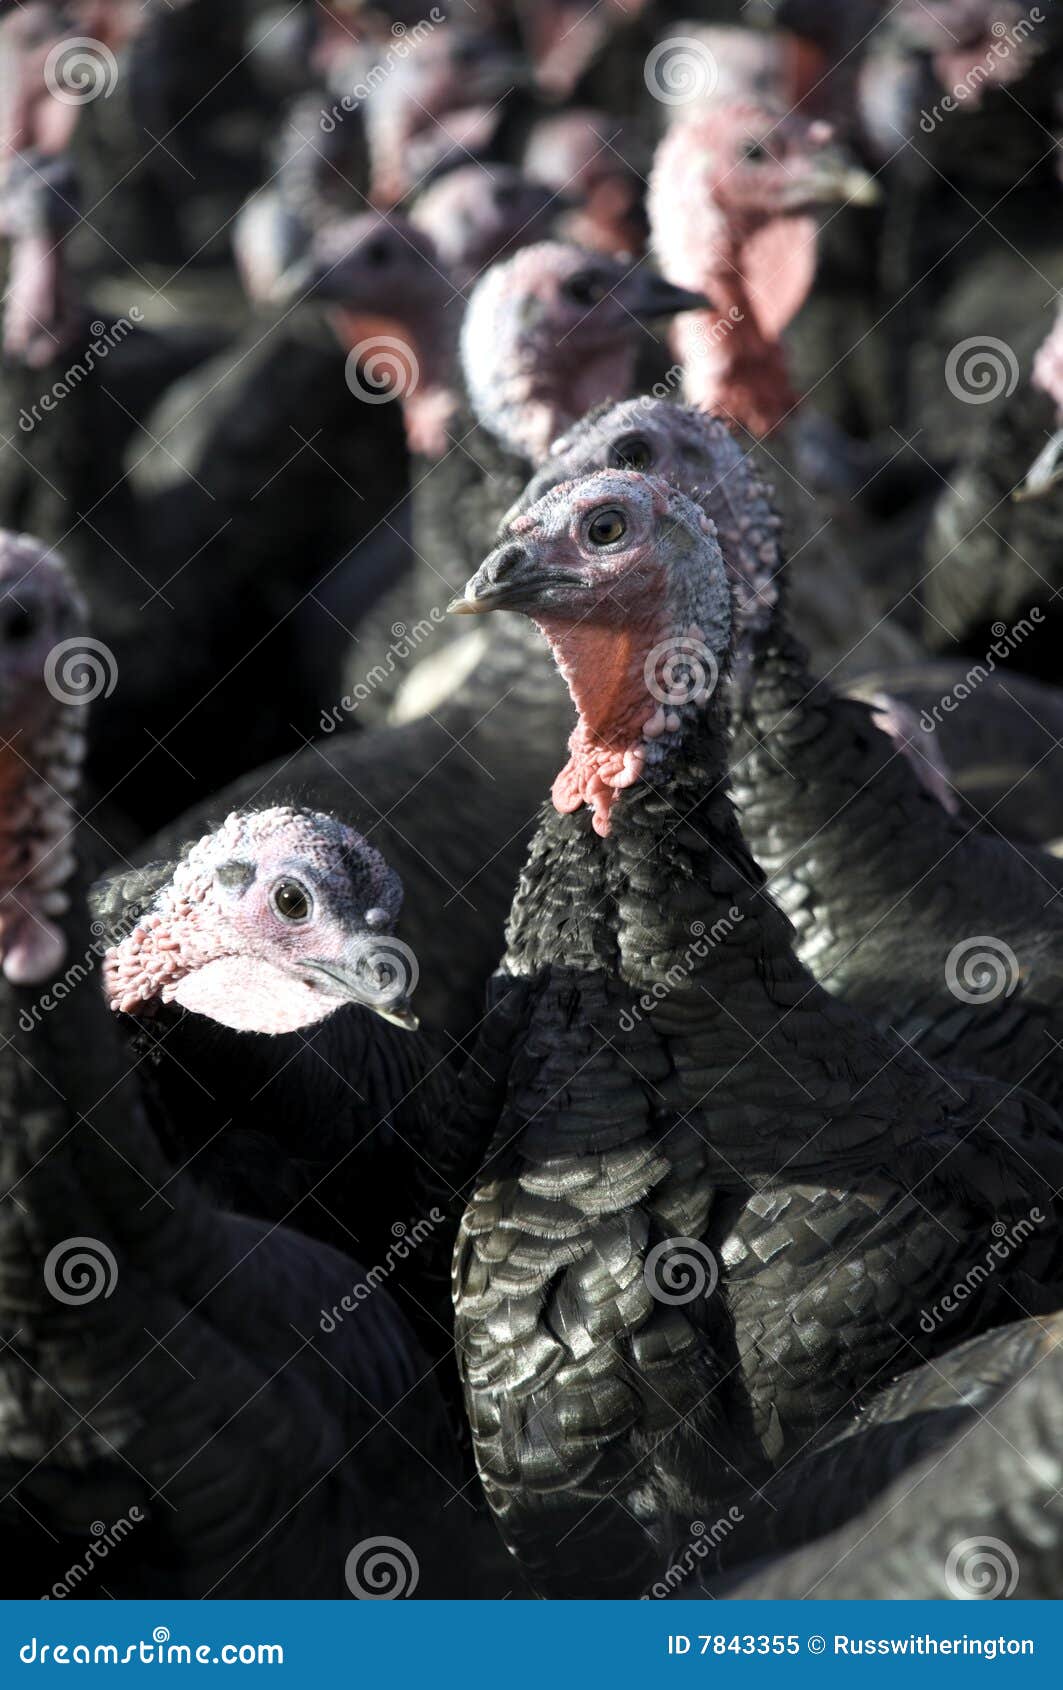 turkeys